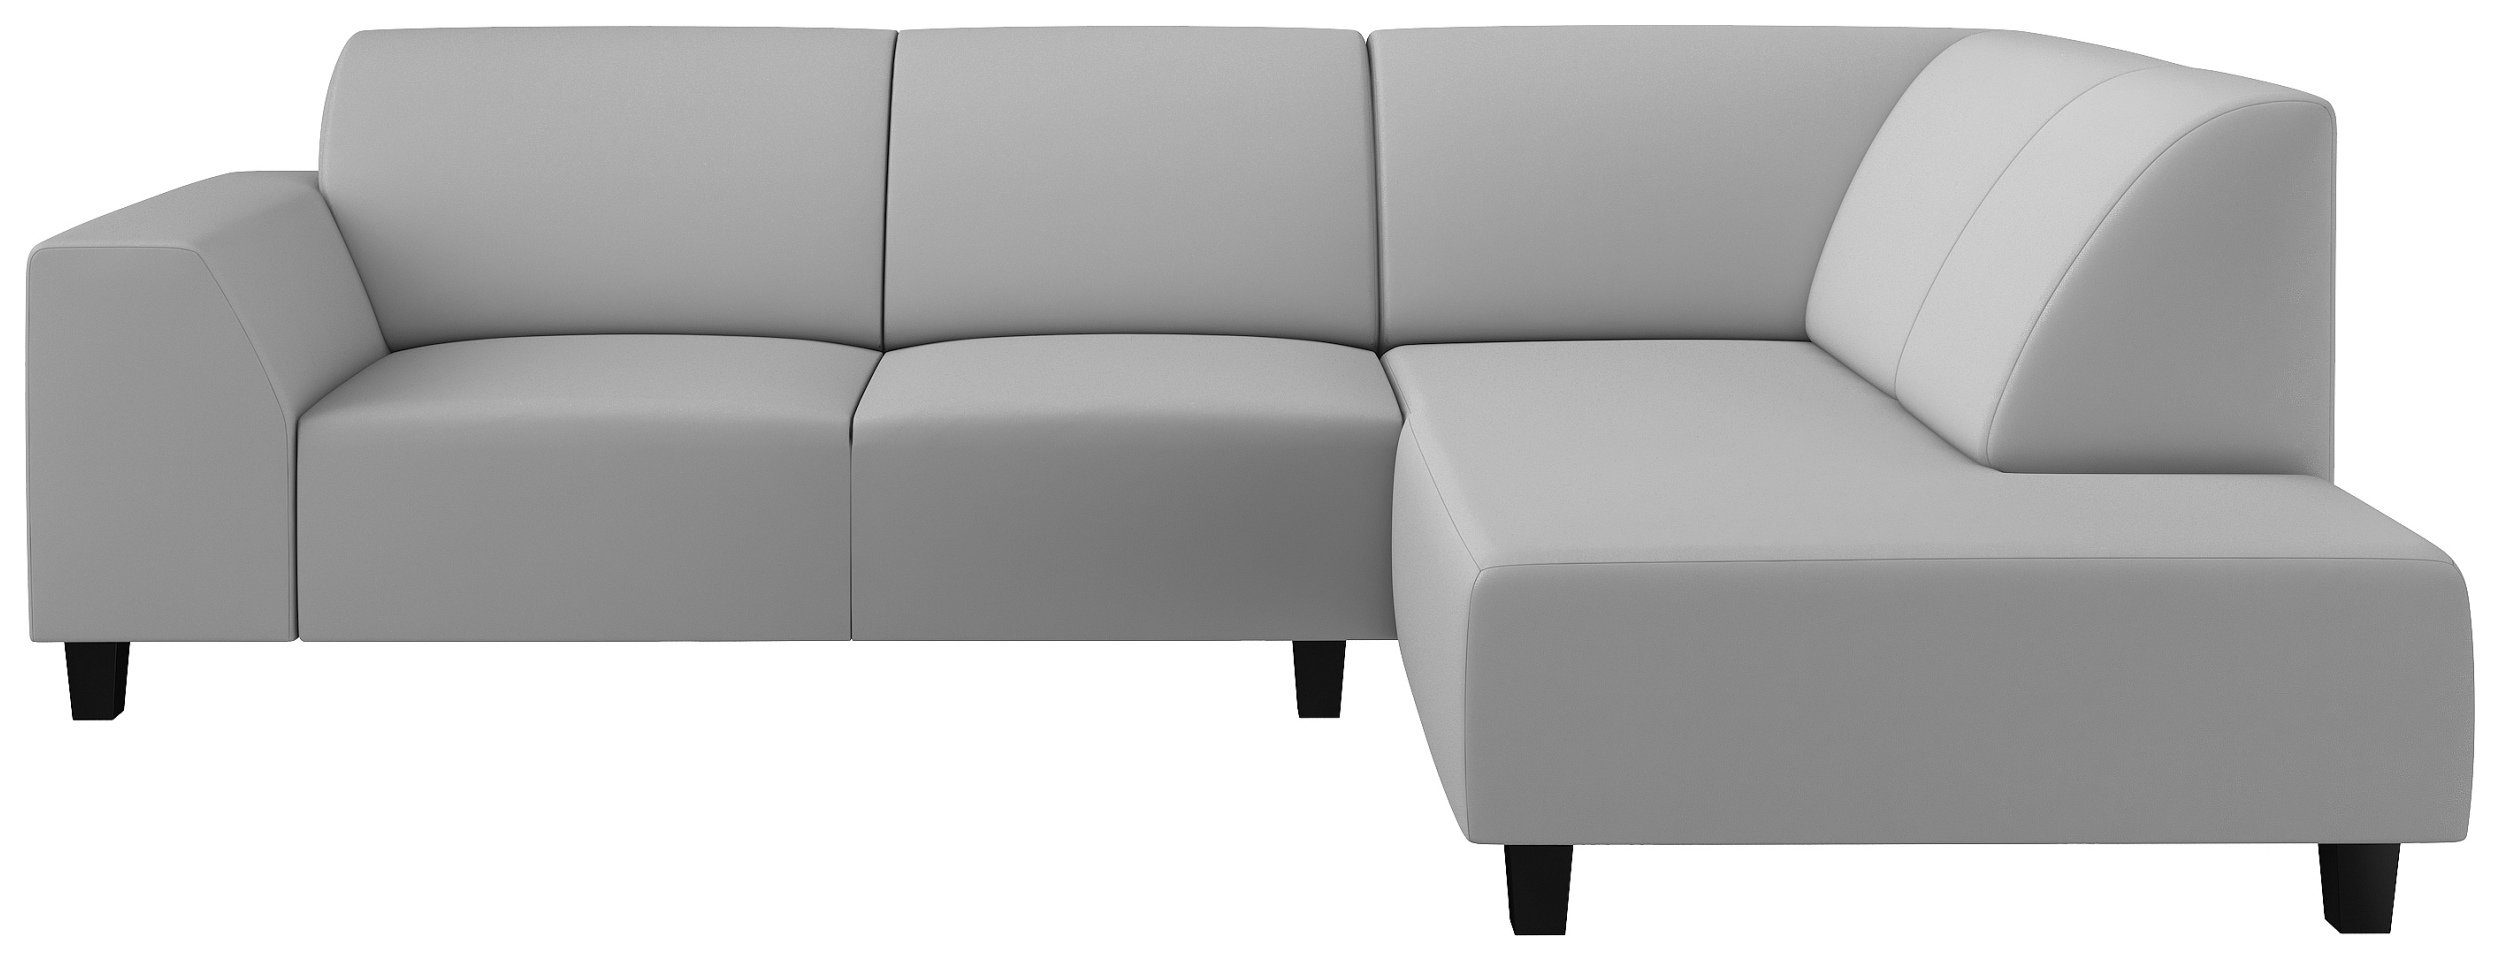 Stylefy Ecksofa oder Eckcouch, Einar, stellbar, rechts mit frei bestellbar, Modern Design, Rückenlehne Sitzkomfort, im Raum links mane L-Form